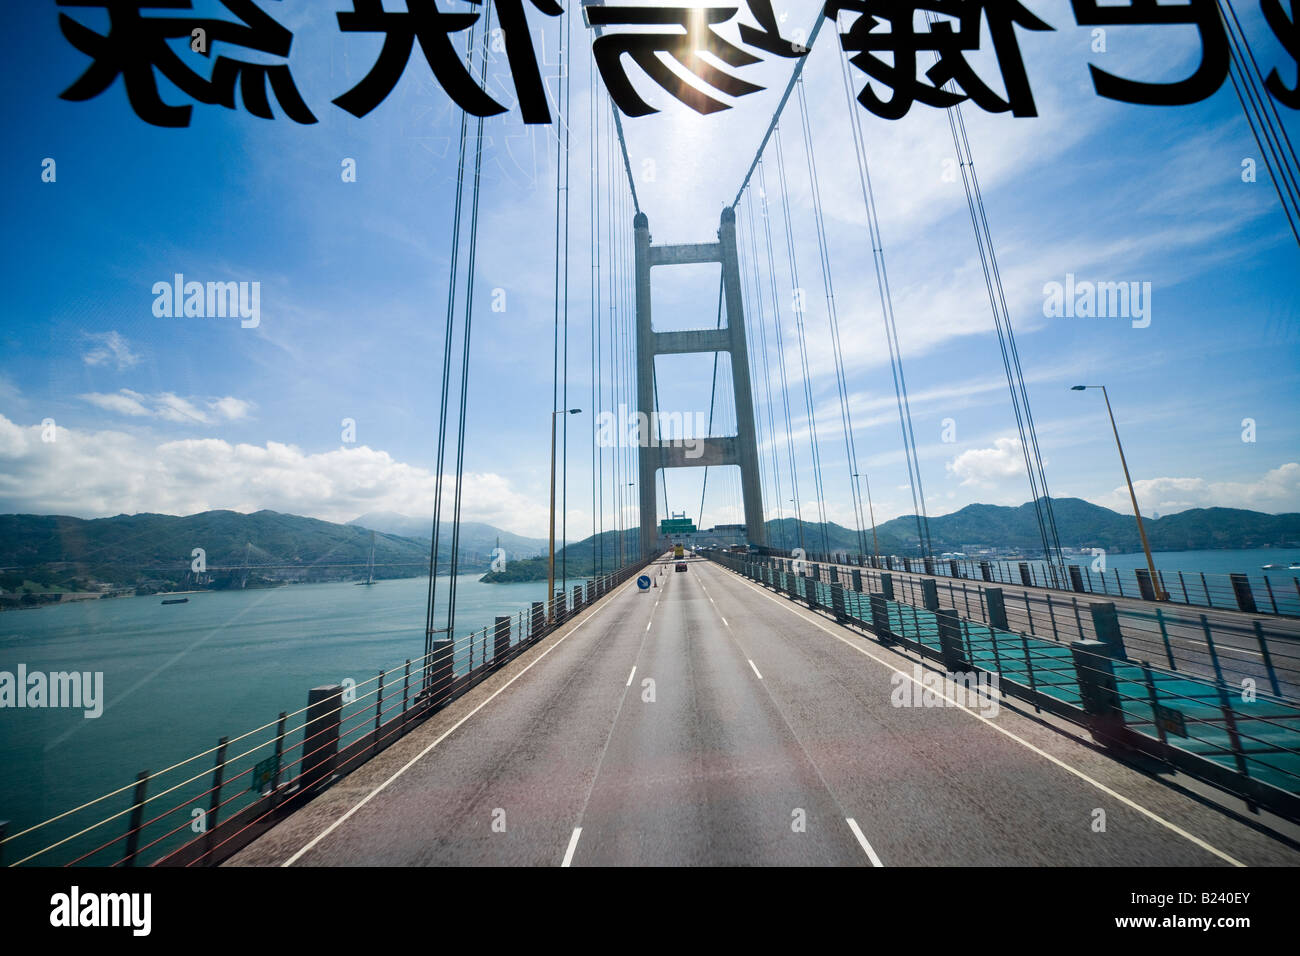 Puente Tsing Ma de Hong Kong vistos a través del parabrisas desde el nivel superior de un double-deck bus Foto de stock